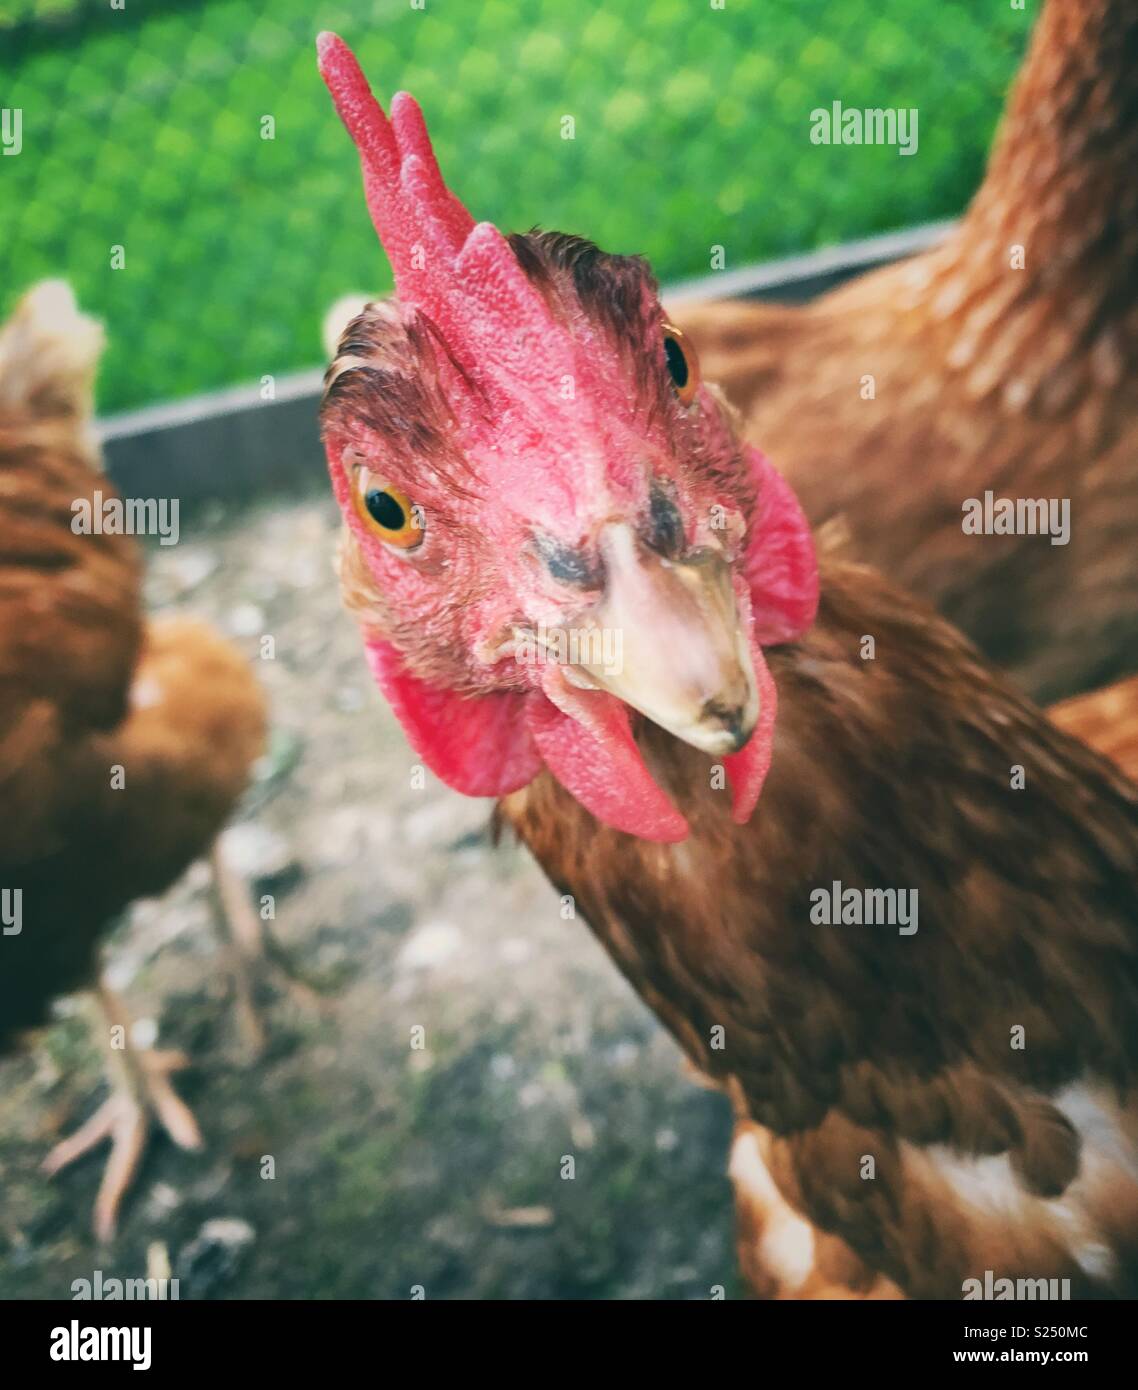 Divertente ritratto di Rhode Island red hen di guardare direttamente la fotocamera con i polli e l'erba verde in background Foto Stock